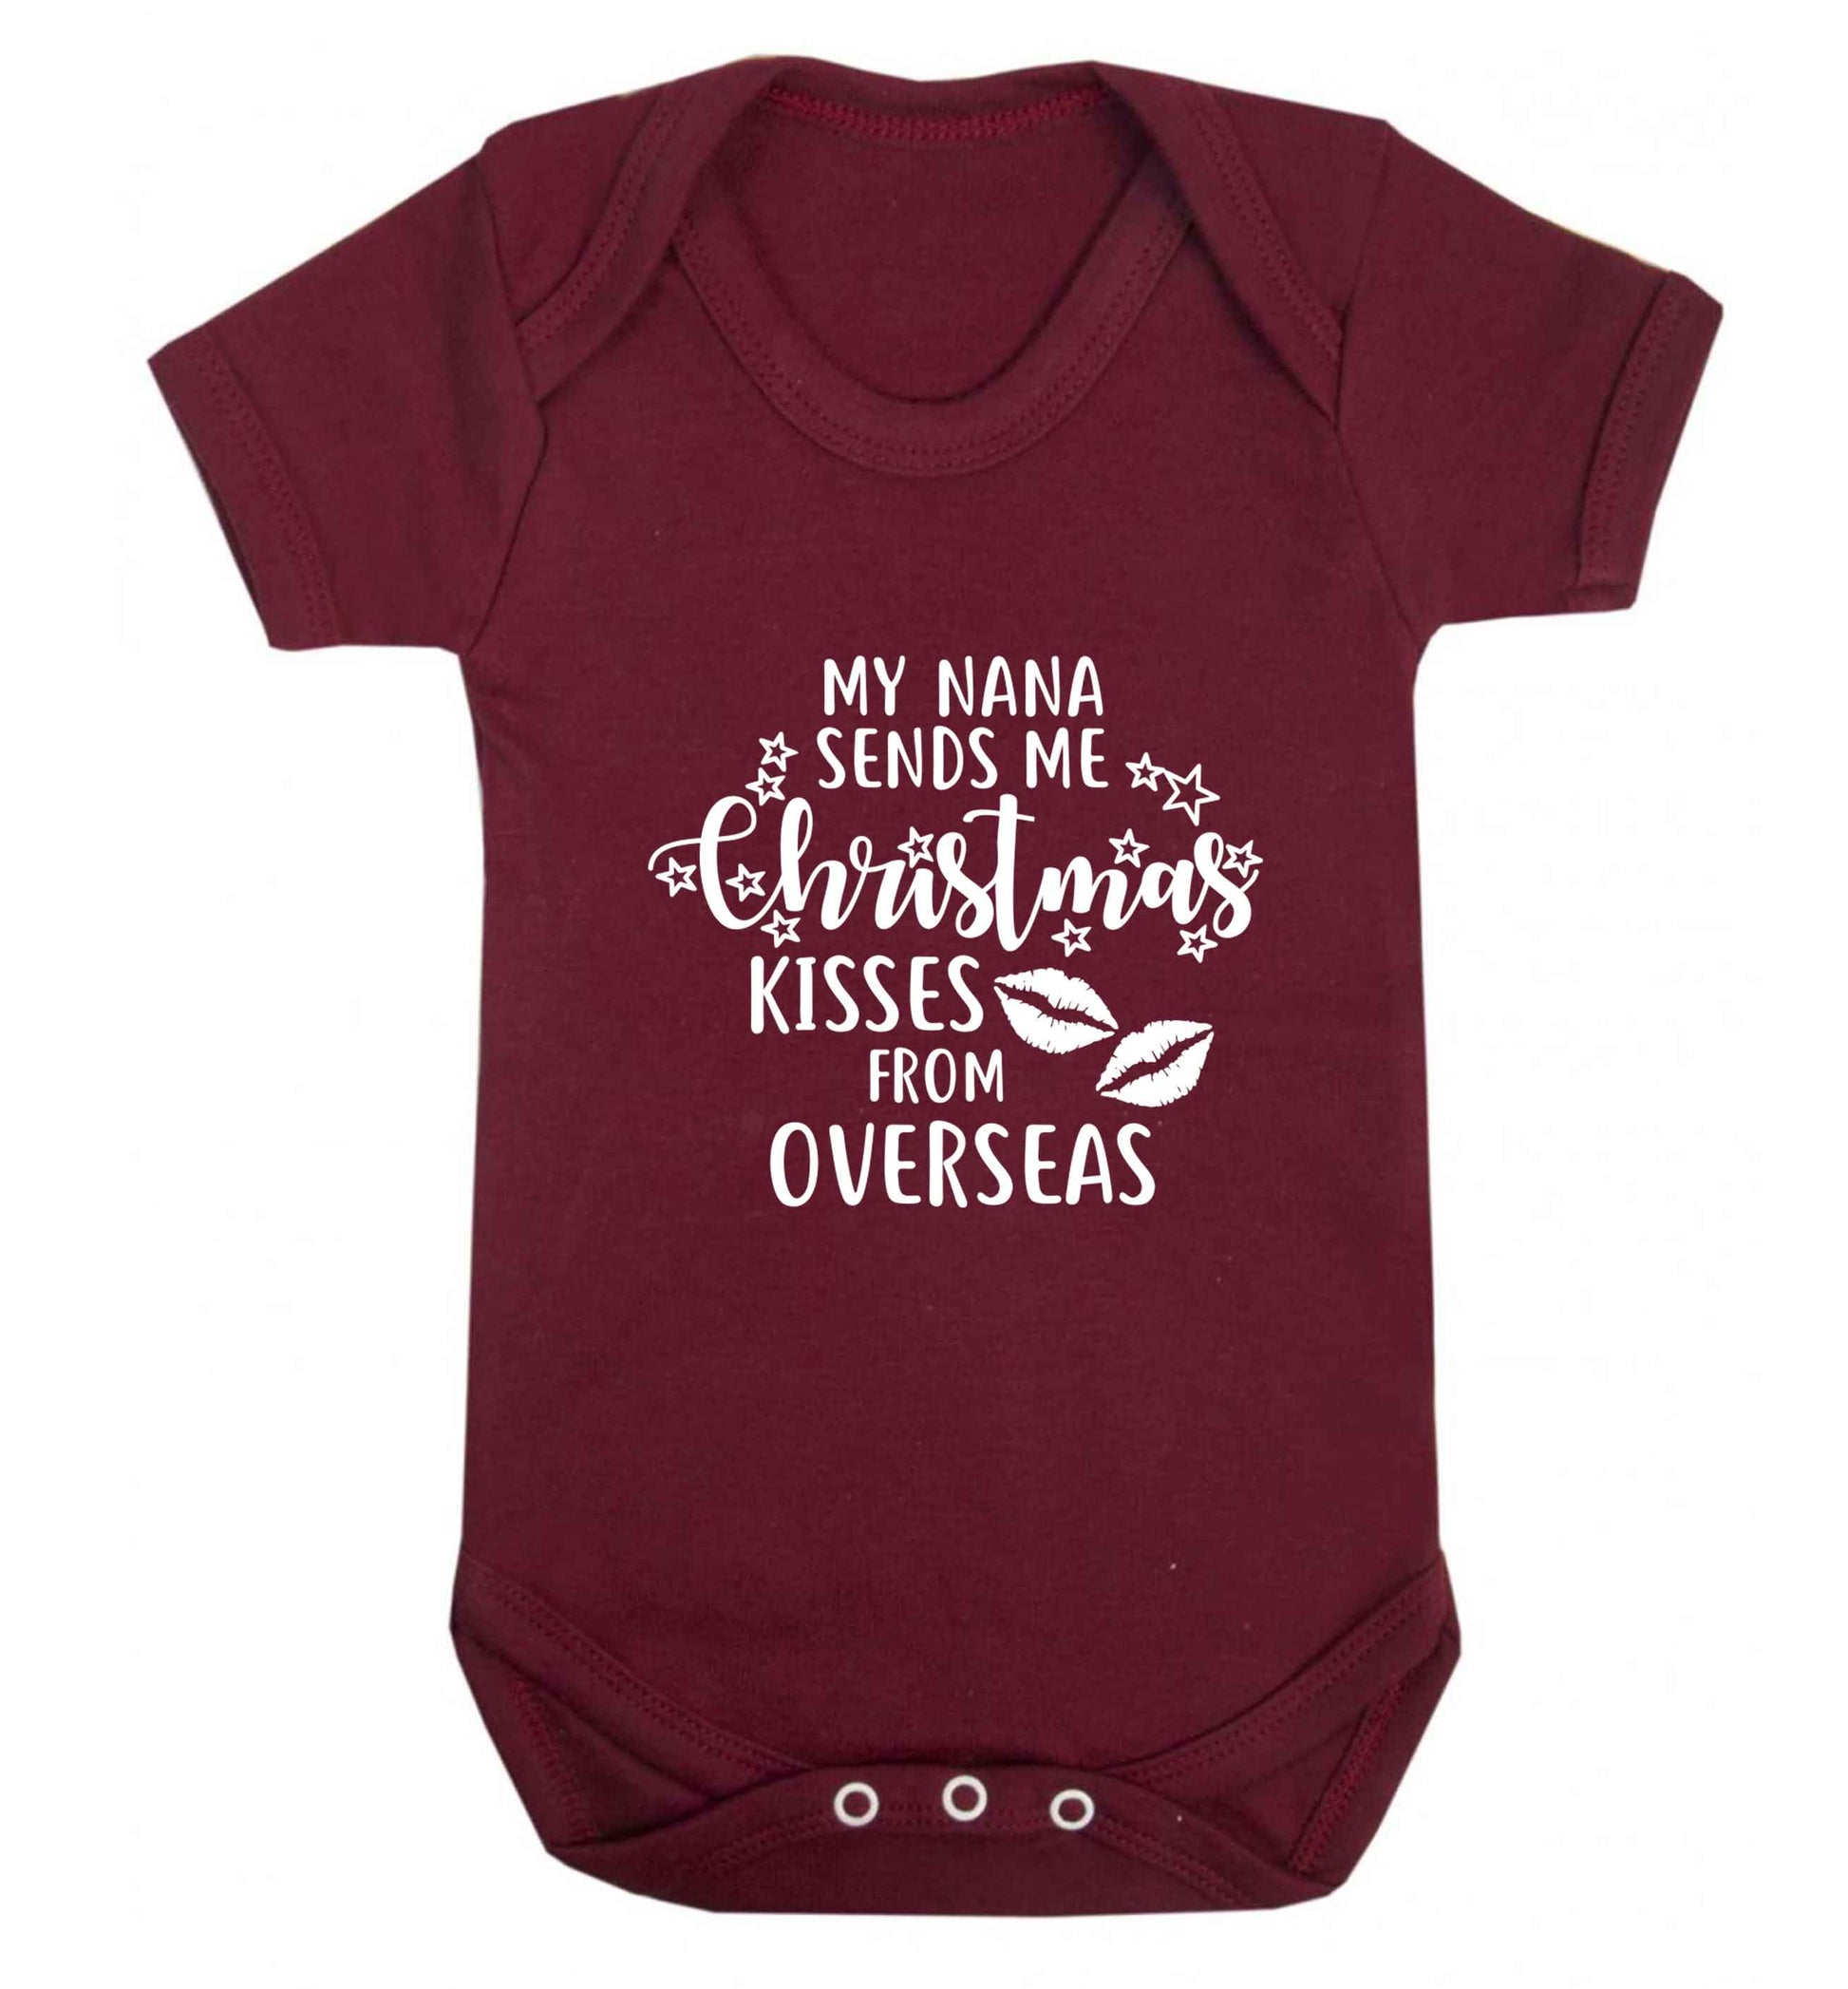 Grandma Christmas Kisses Overseas baby vest maroon 18-24 months